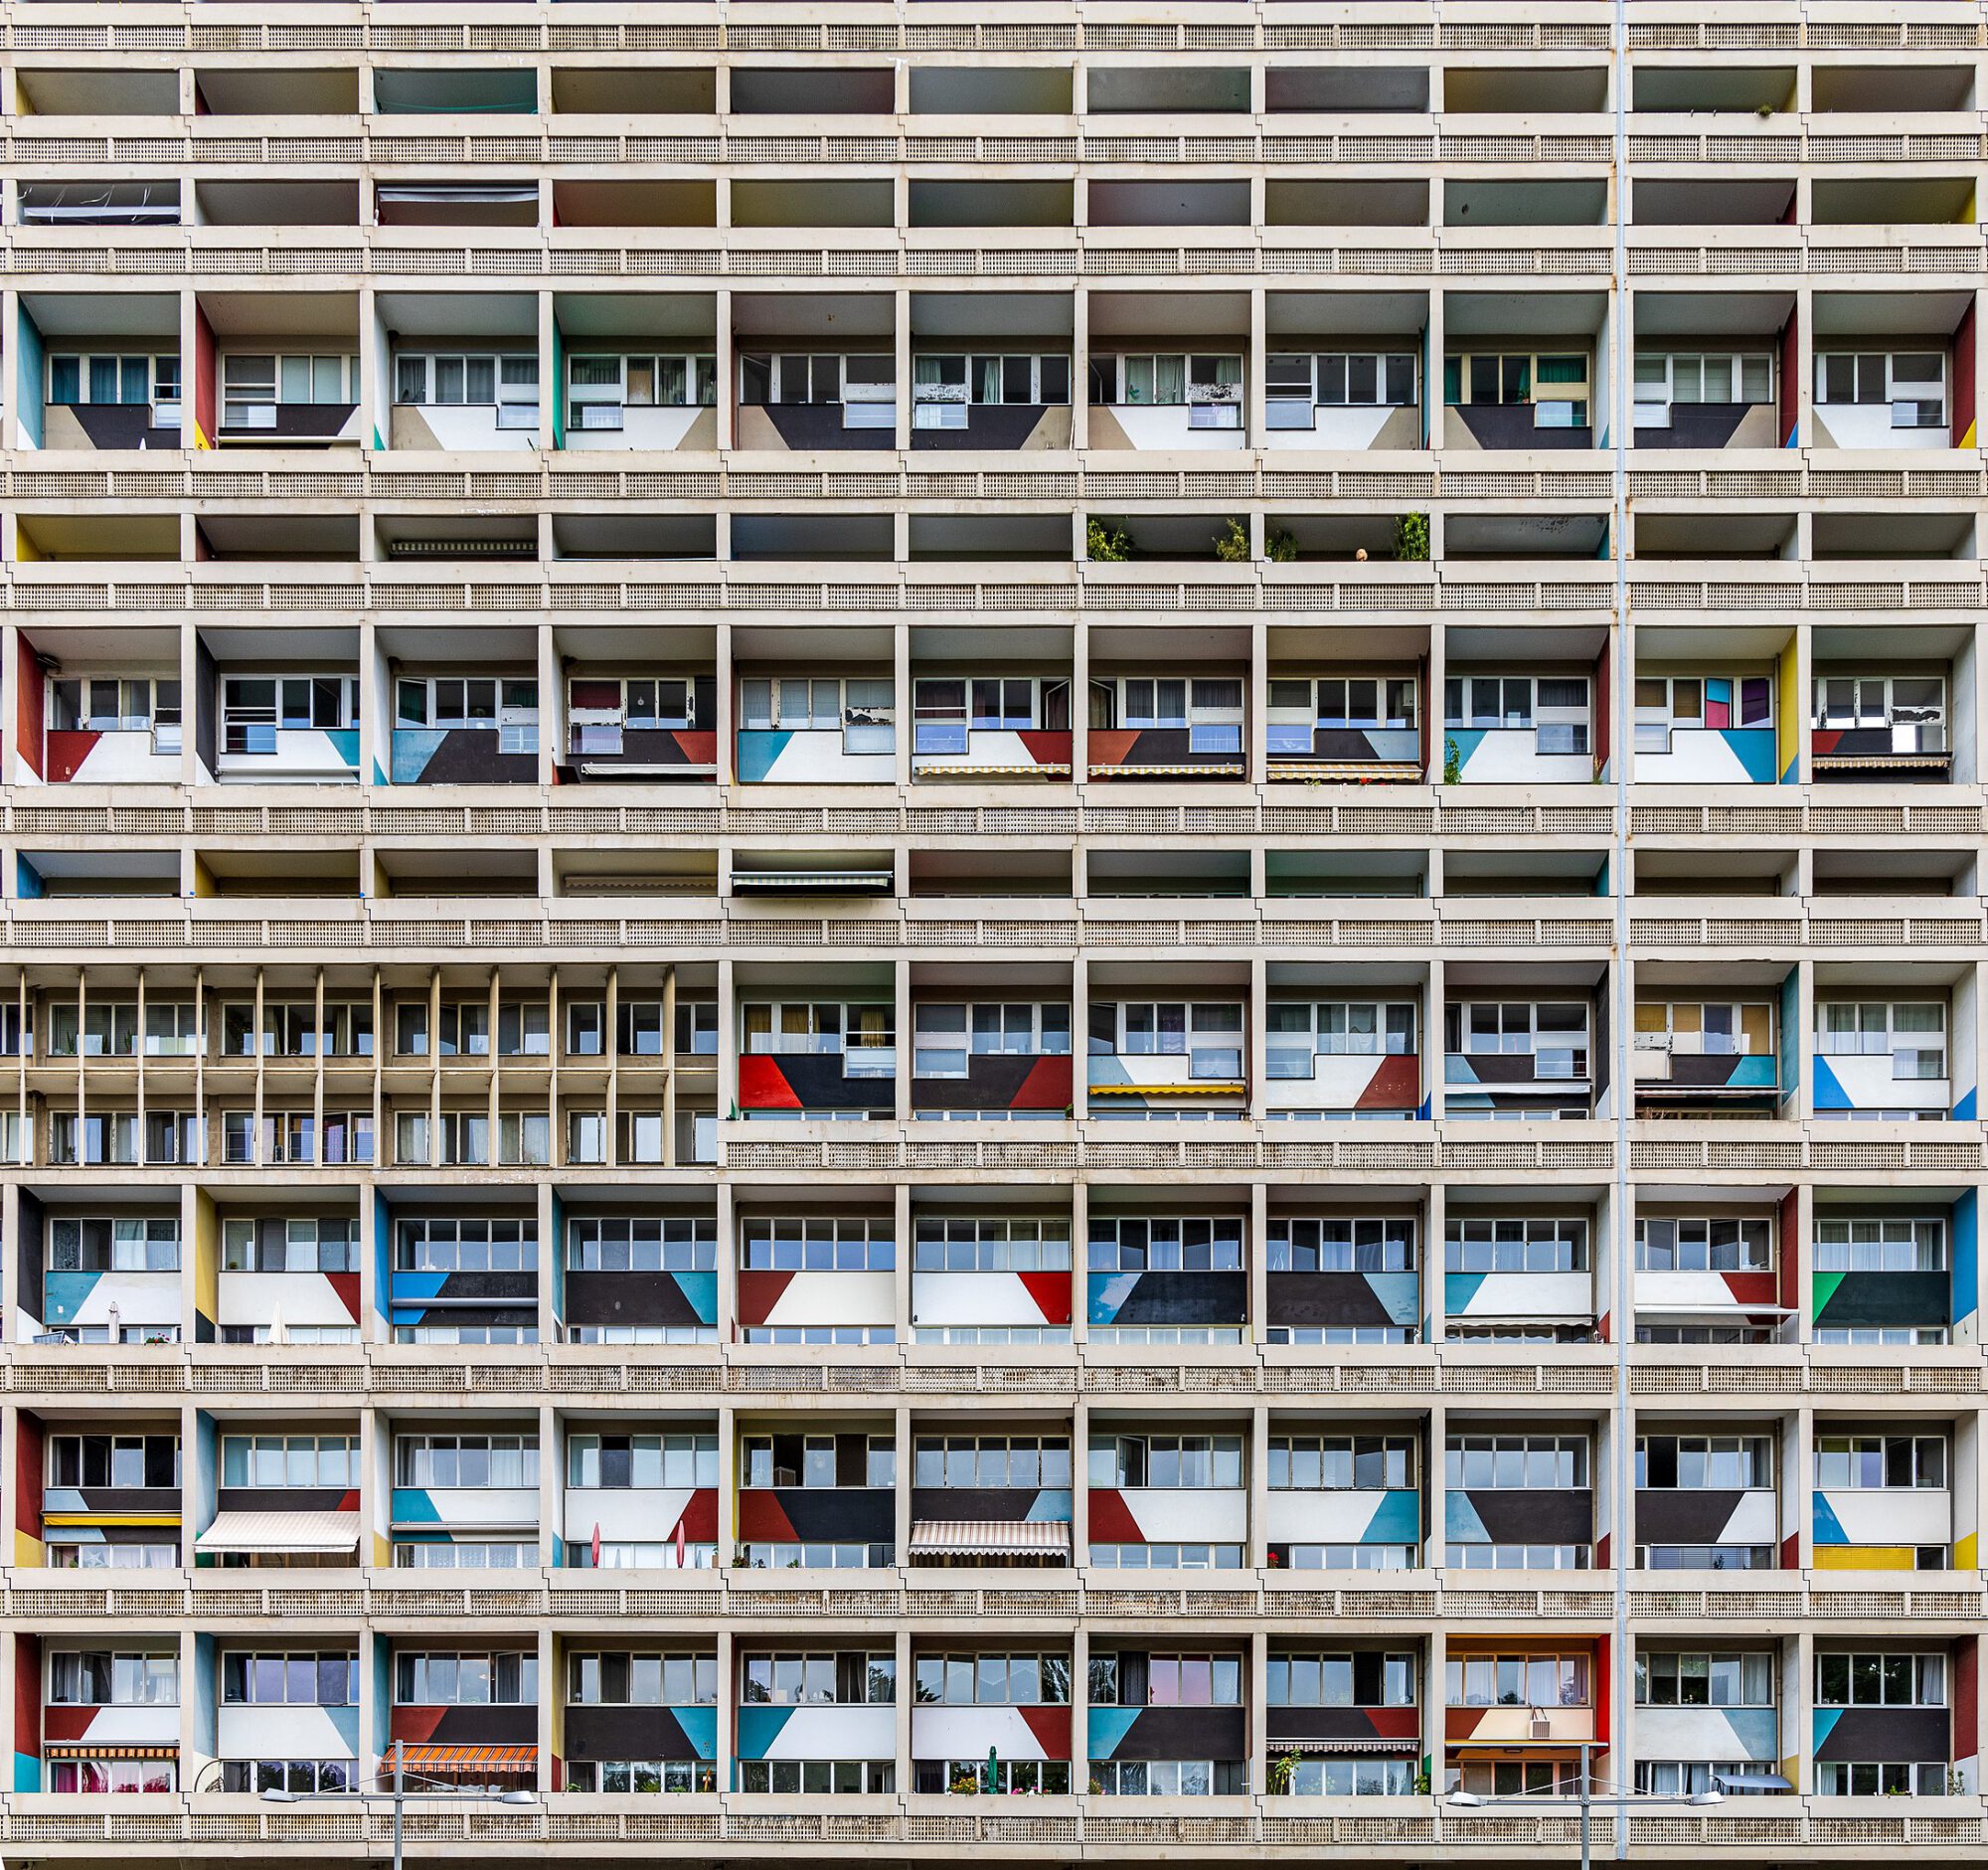 Titelbild Architekturfotografie. Es zeigt die Fassade des Corbusierhauses in Berlin